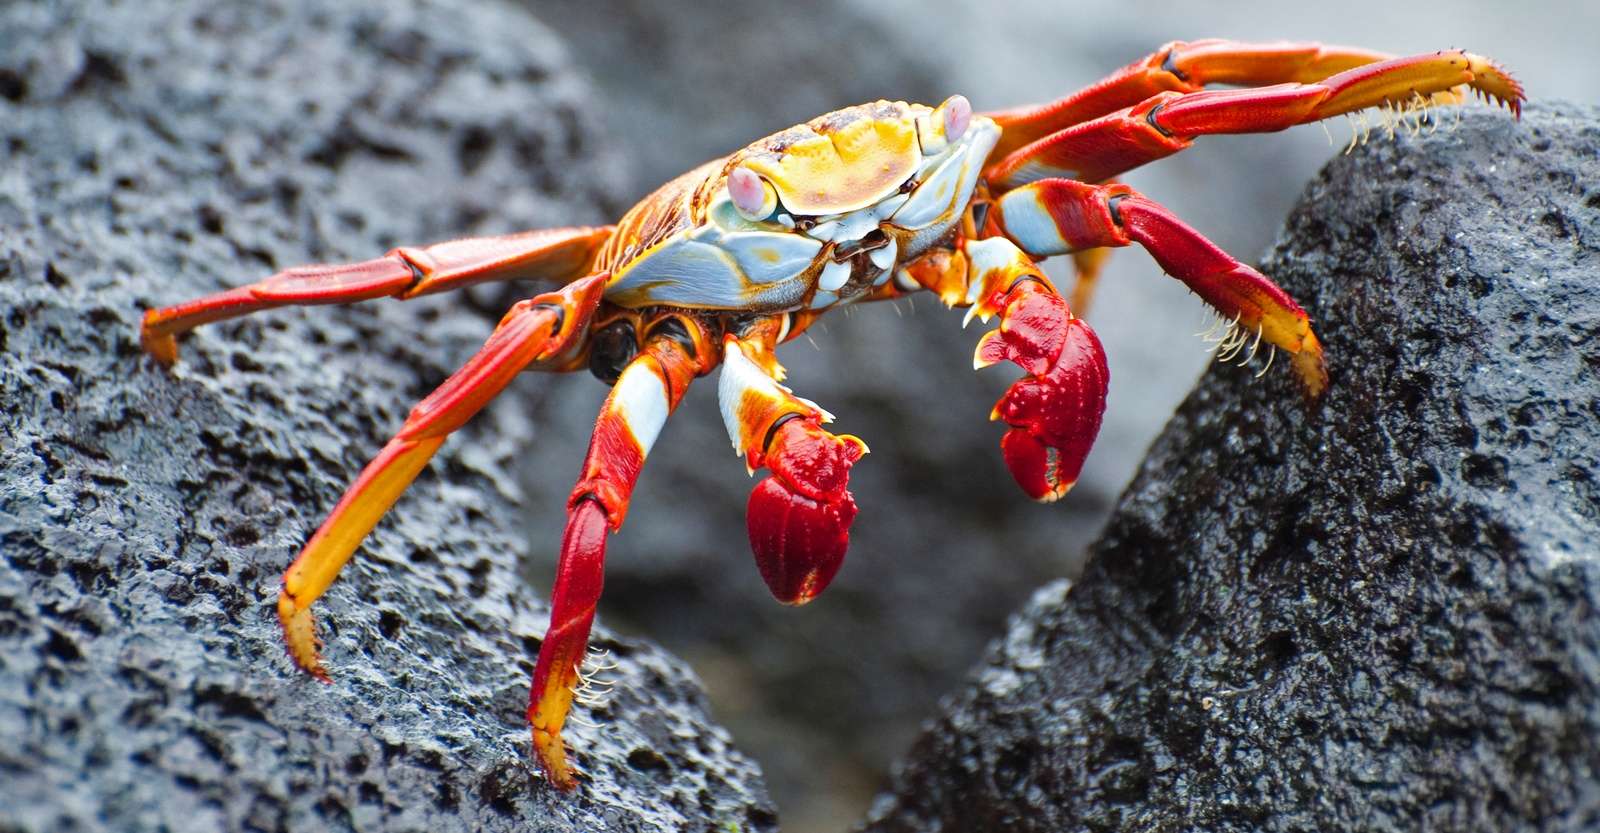 Sally Lightfoot crab, Fernandina Island, Galapagos, Ecuador.